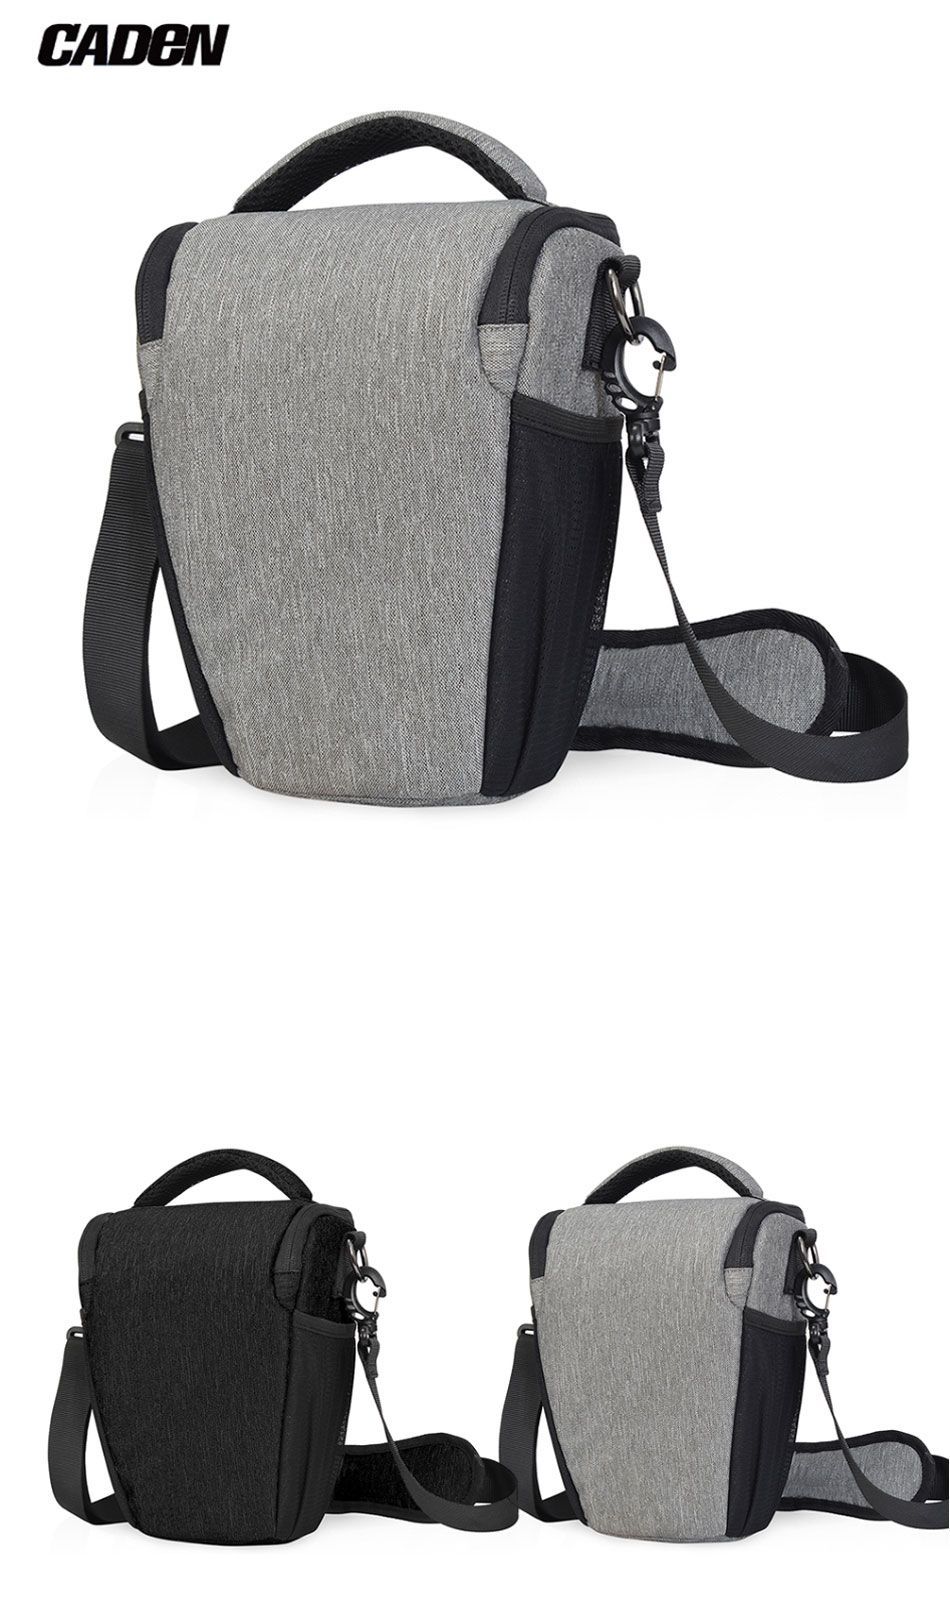 Caden-D1-Shoulder-Sling-Bag-Pouch-Water-resistant-Carry-Bag-with-Adjustable-Strap-for-DSLR-SLR-Camer-1556467